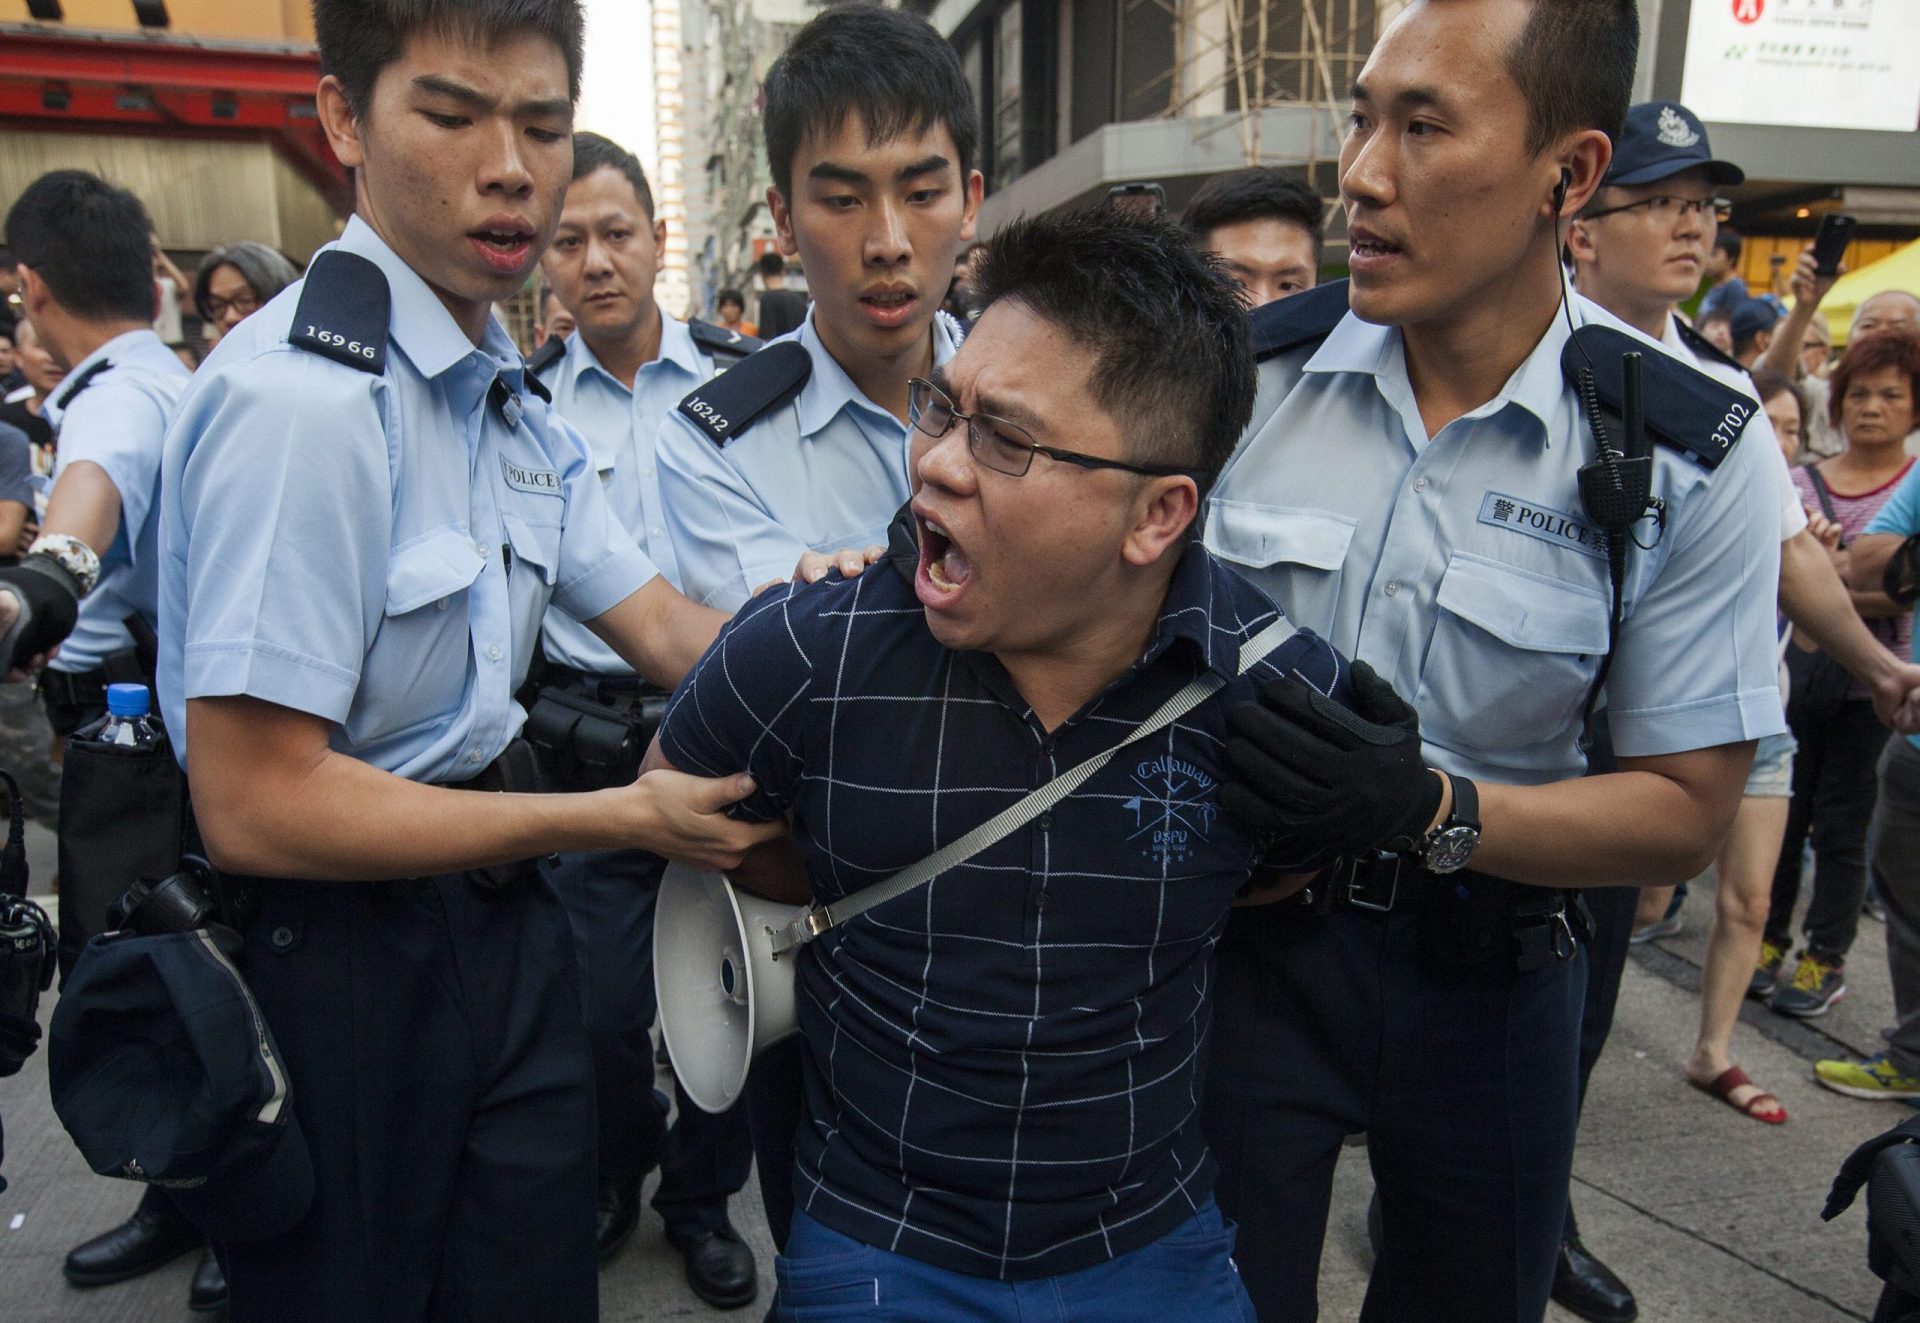 Jornalistas atacados numa manifestação em Hong-Kong